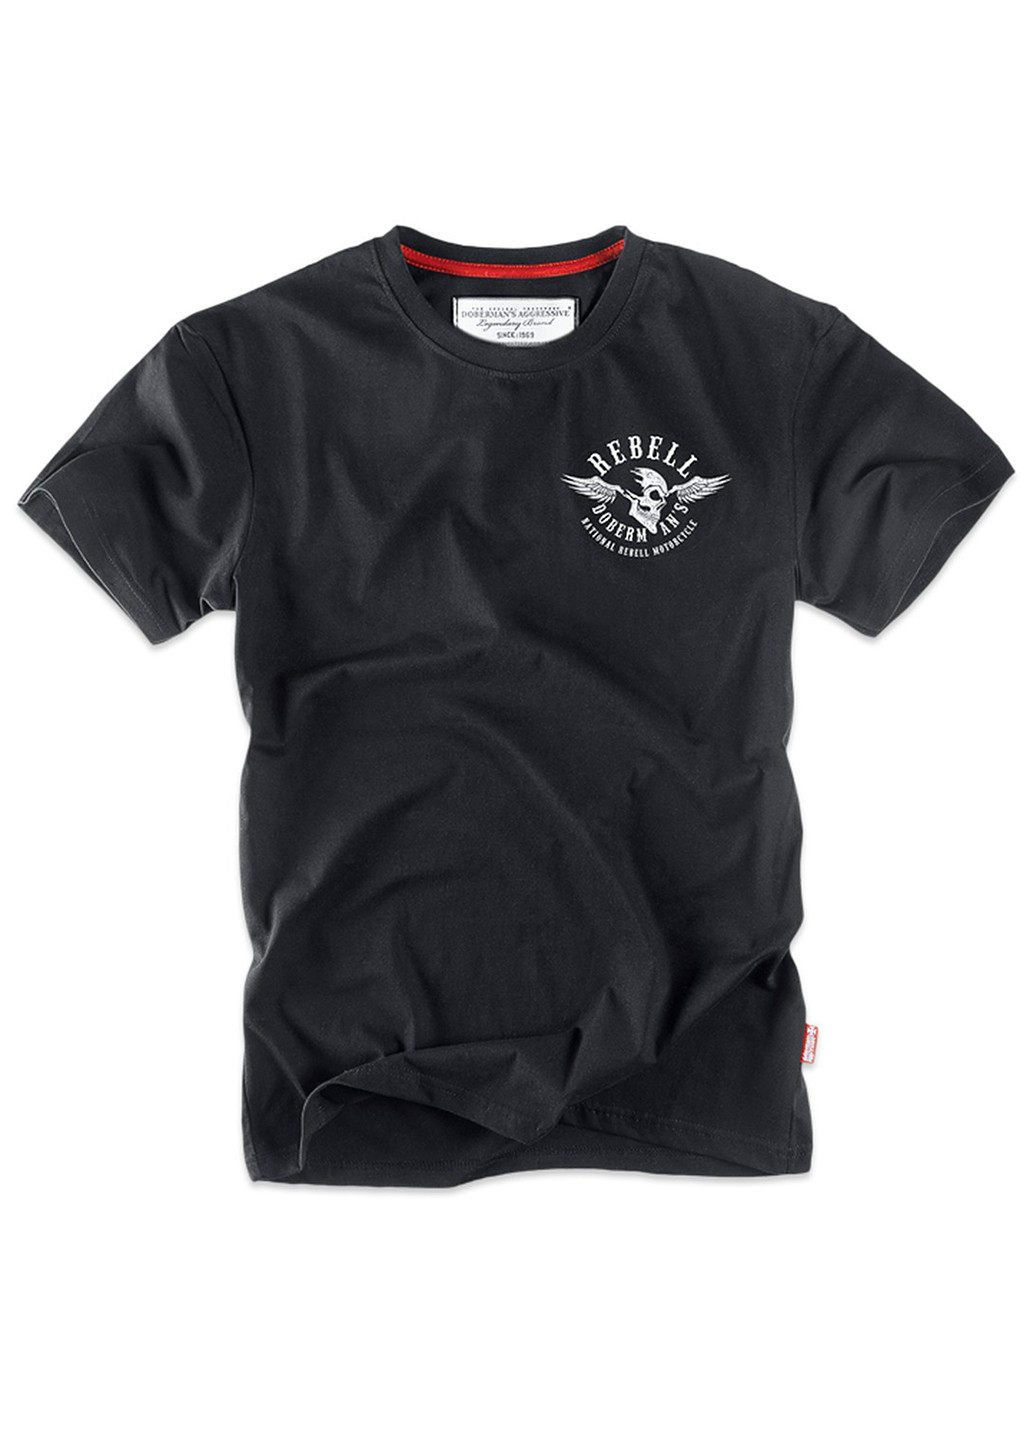 Черная футболка dobermans rebell ts163bk Dobermans Aggressive